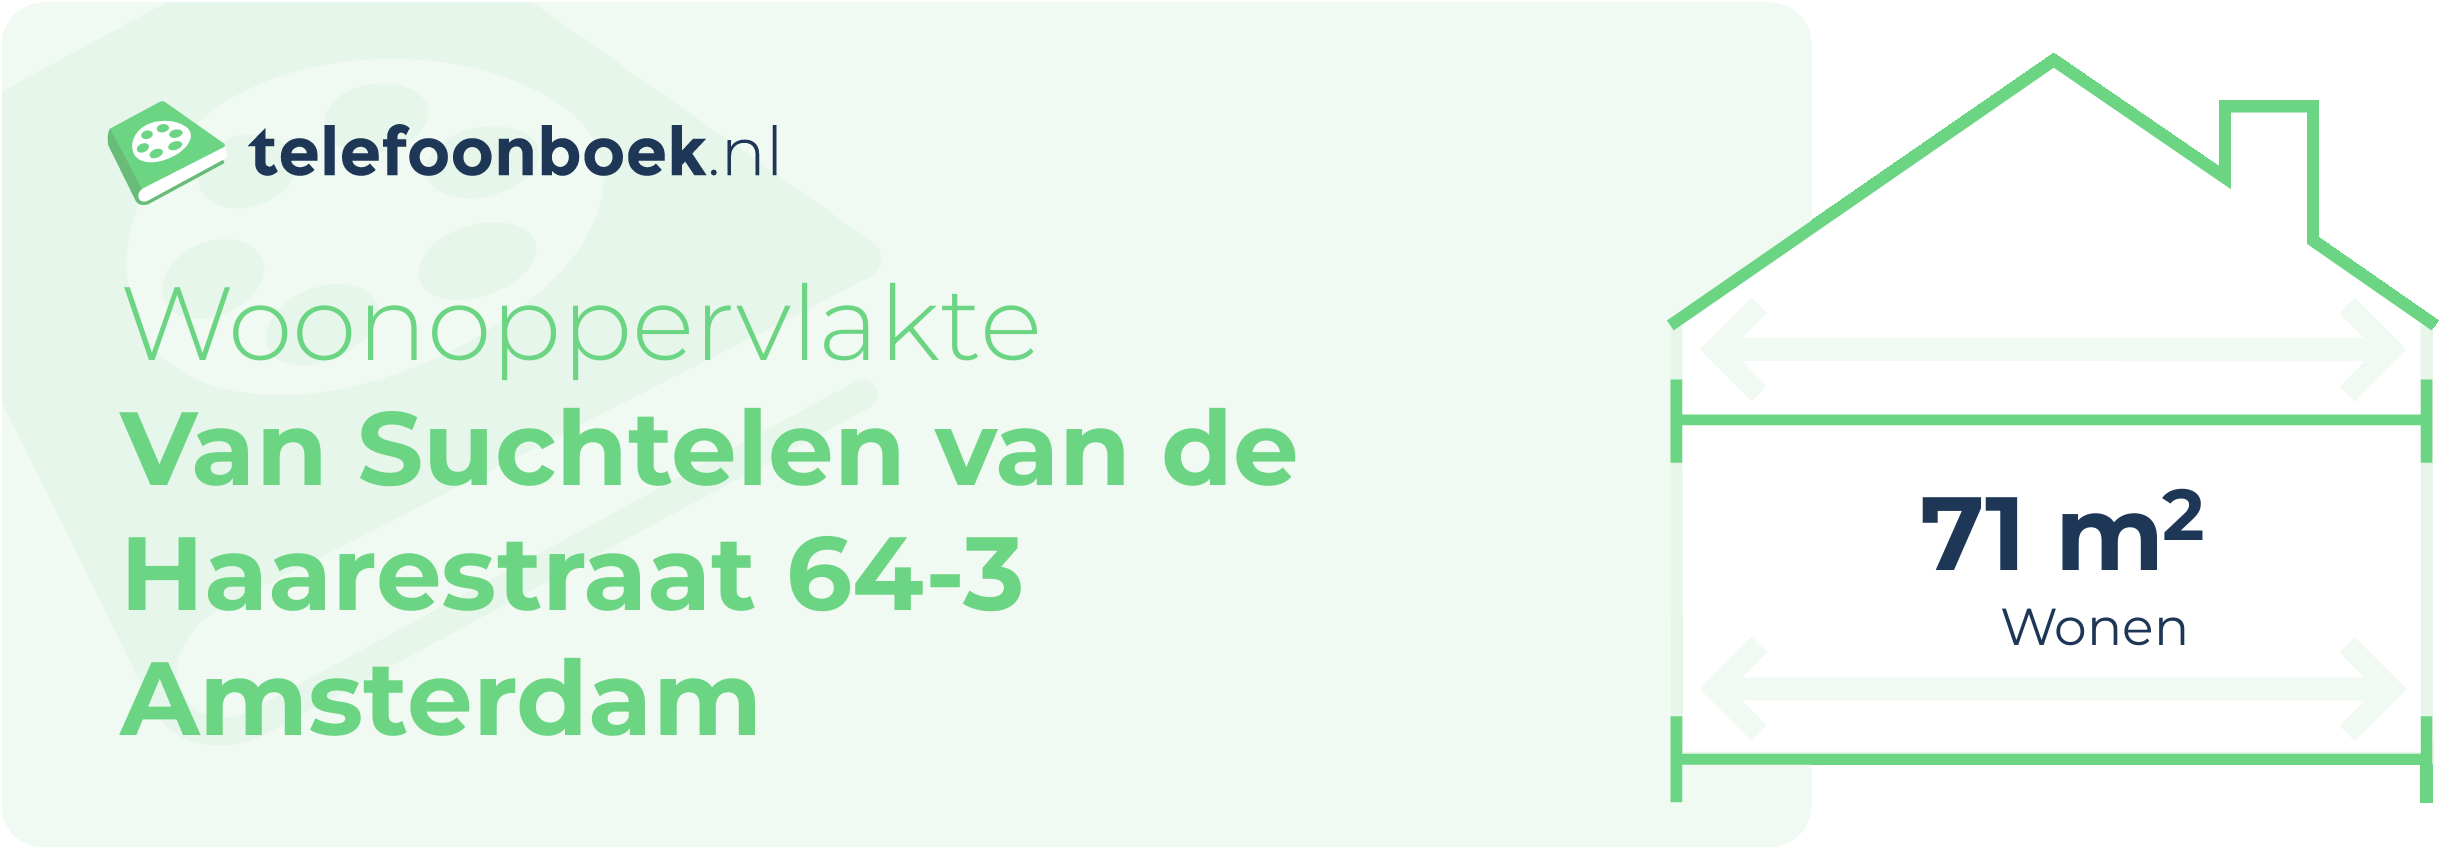 Woonoppervlakte Van Suchtelen Van De Haarestraat 64-3 Amsterdam